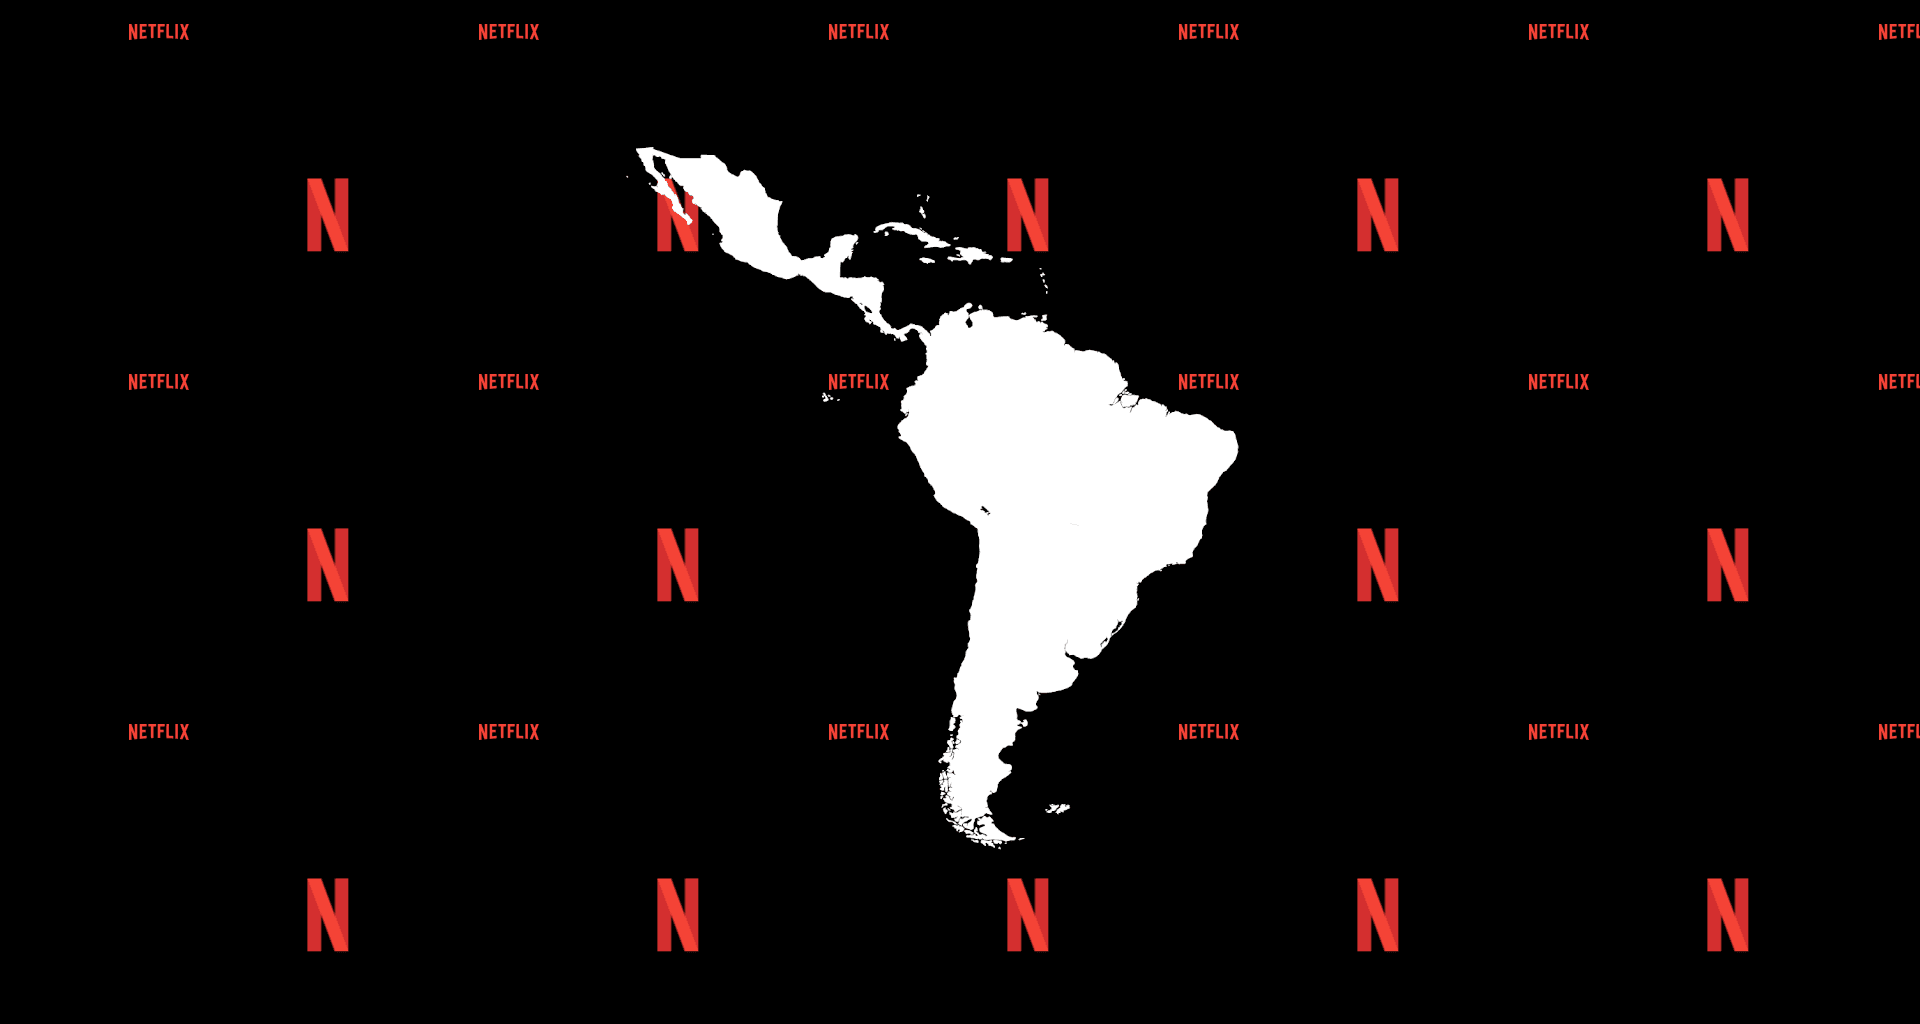 Cobrança de contas compartilhadas da netflix se estende na américa latina